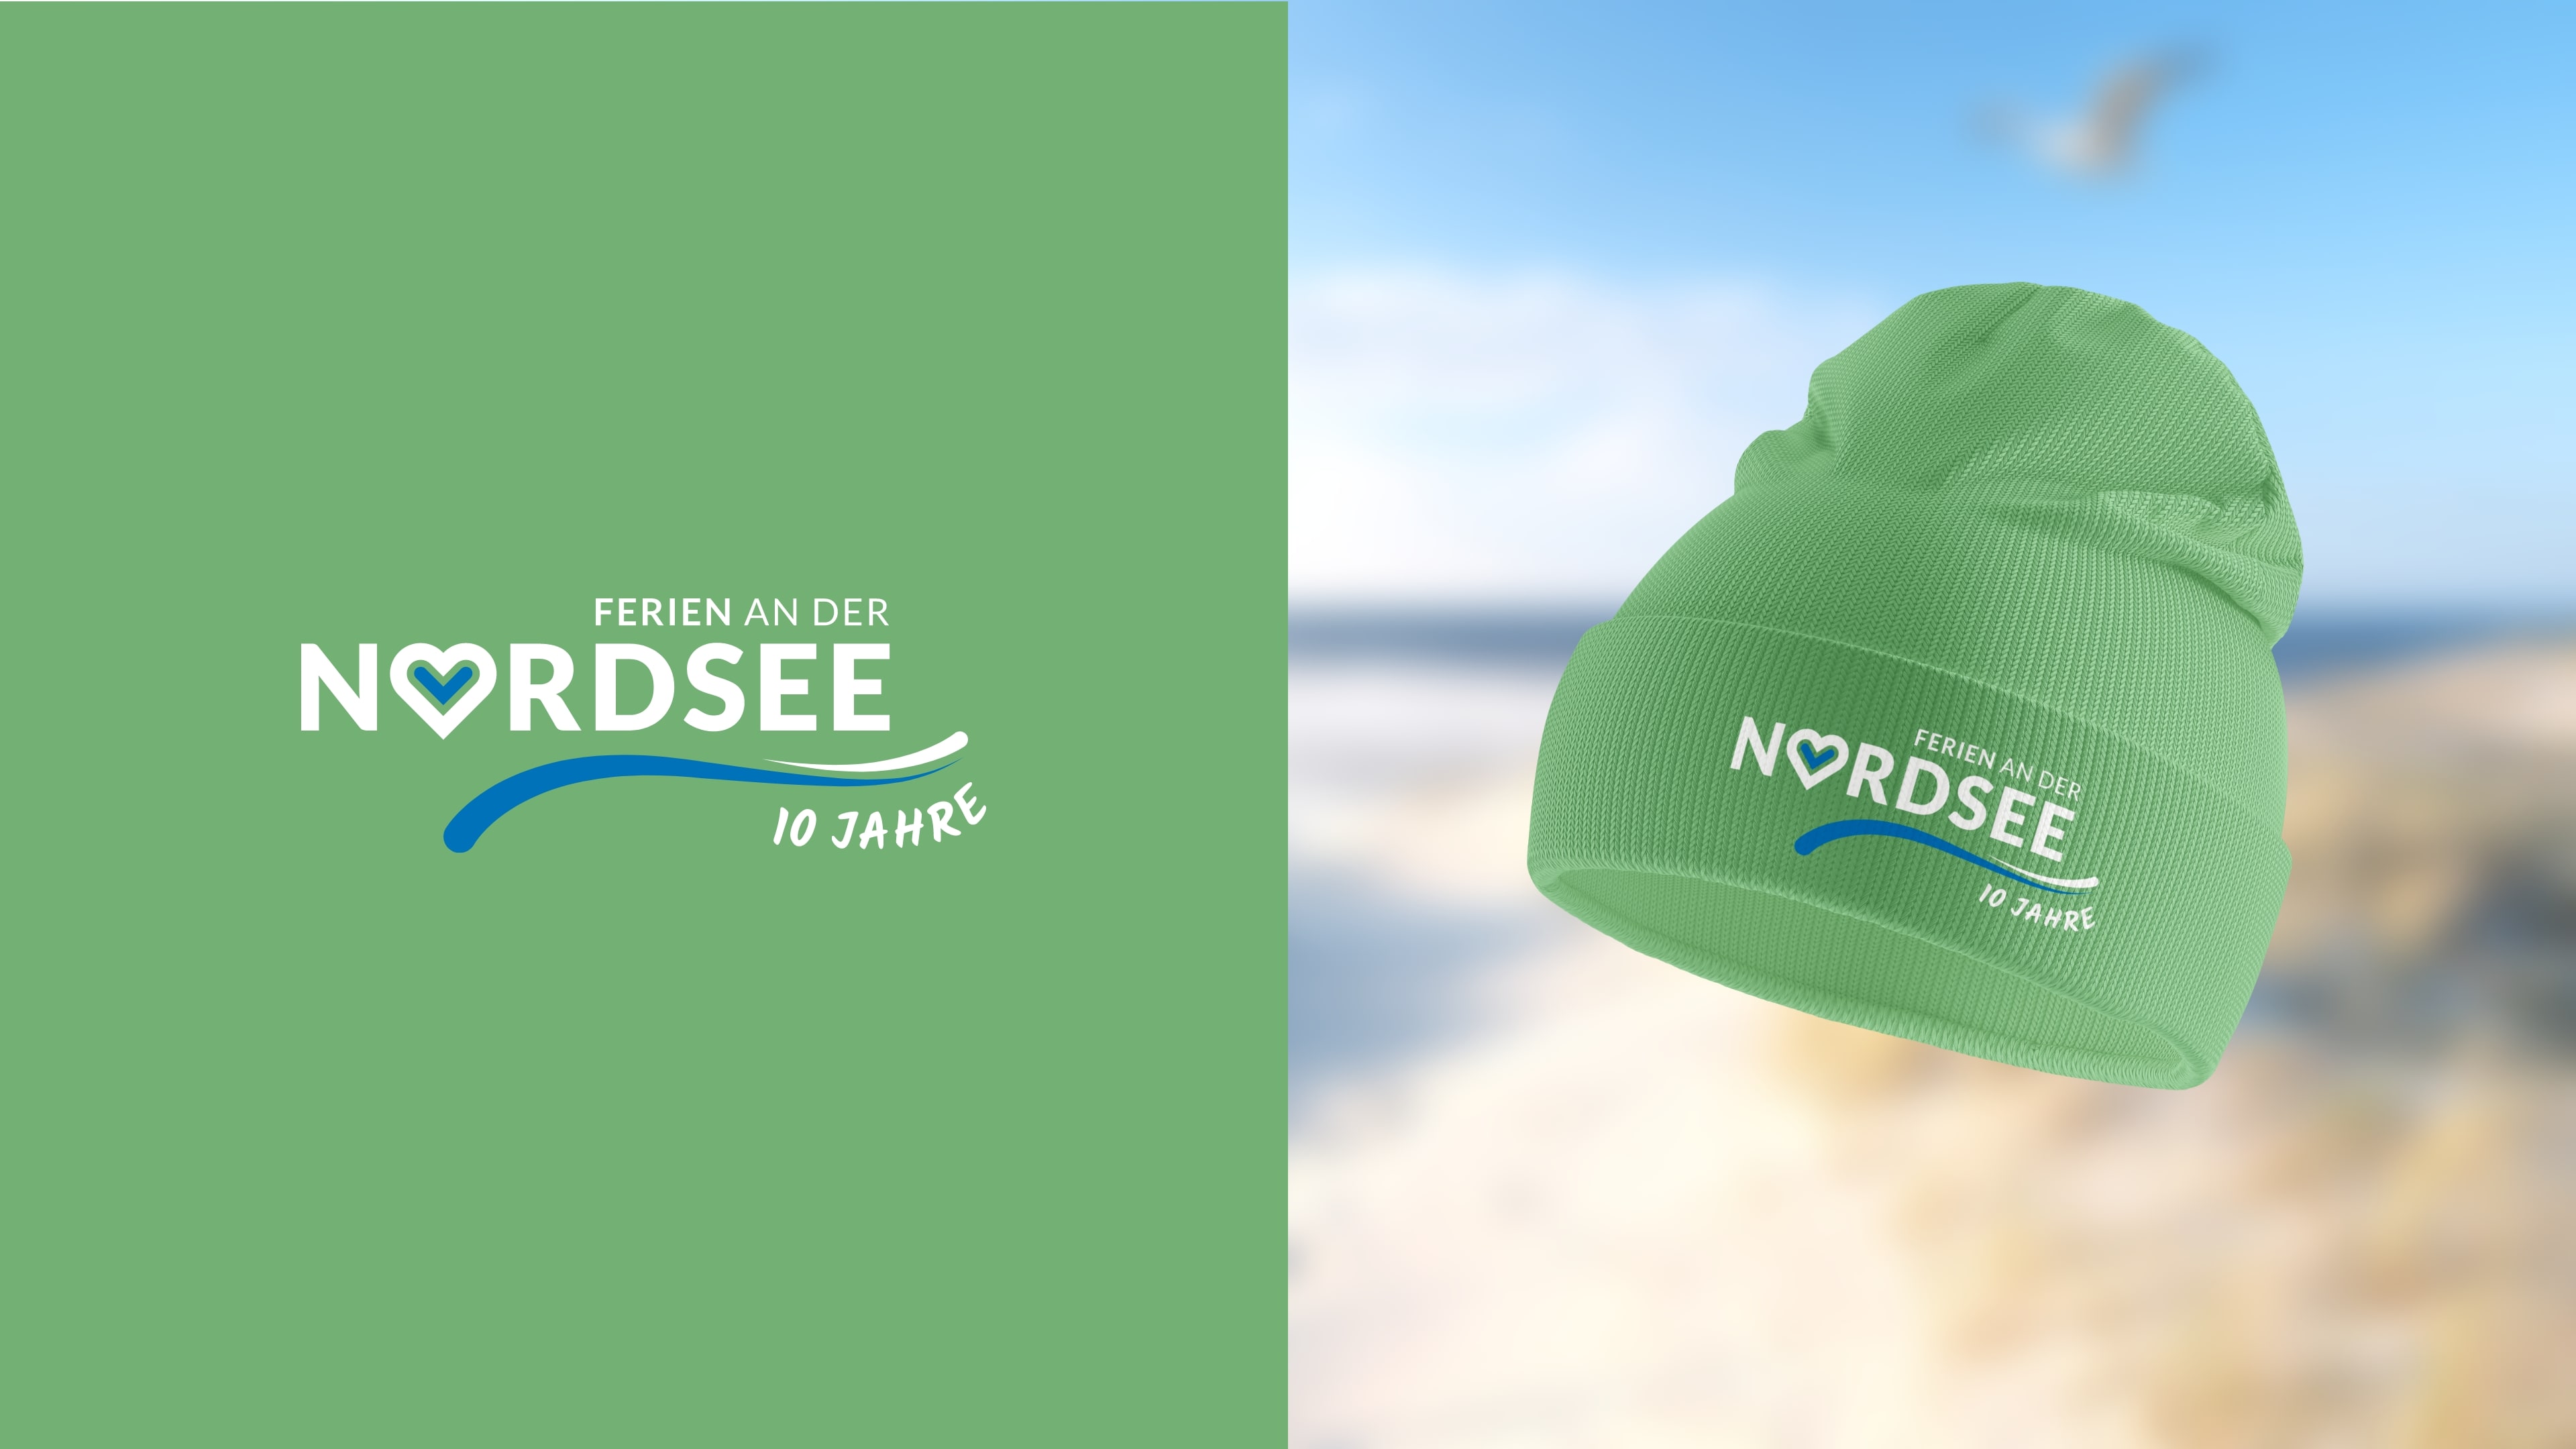 Zweigeteiltes Bild: links Logo "Ferien an der Nordsee vor grünem Hintergrund, rechts grüne Mütze mit Logo